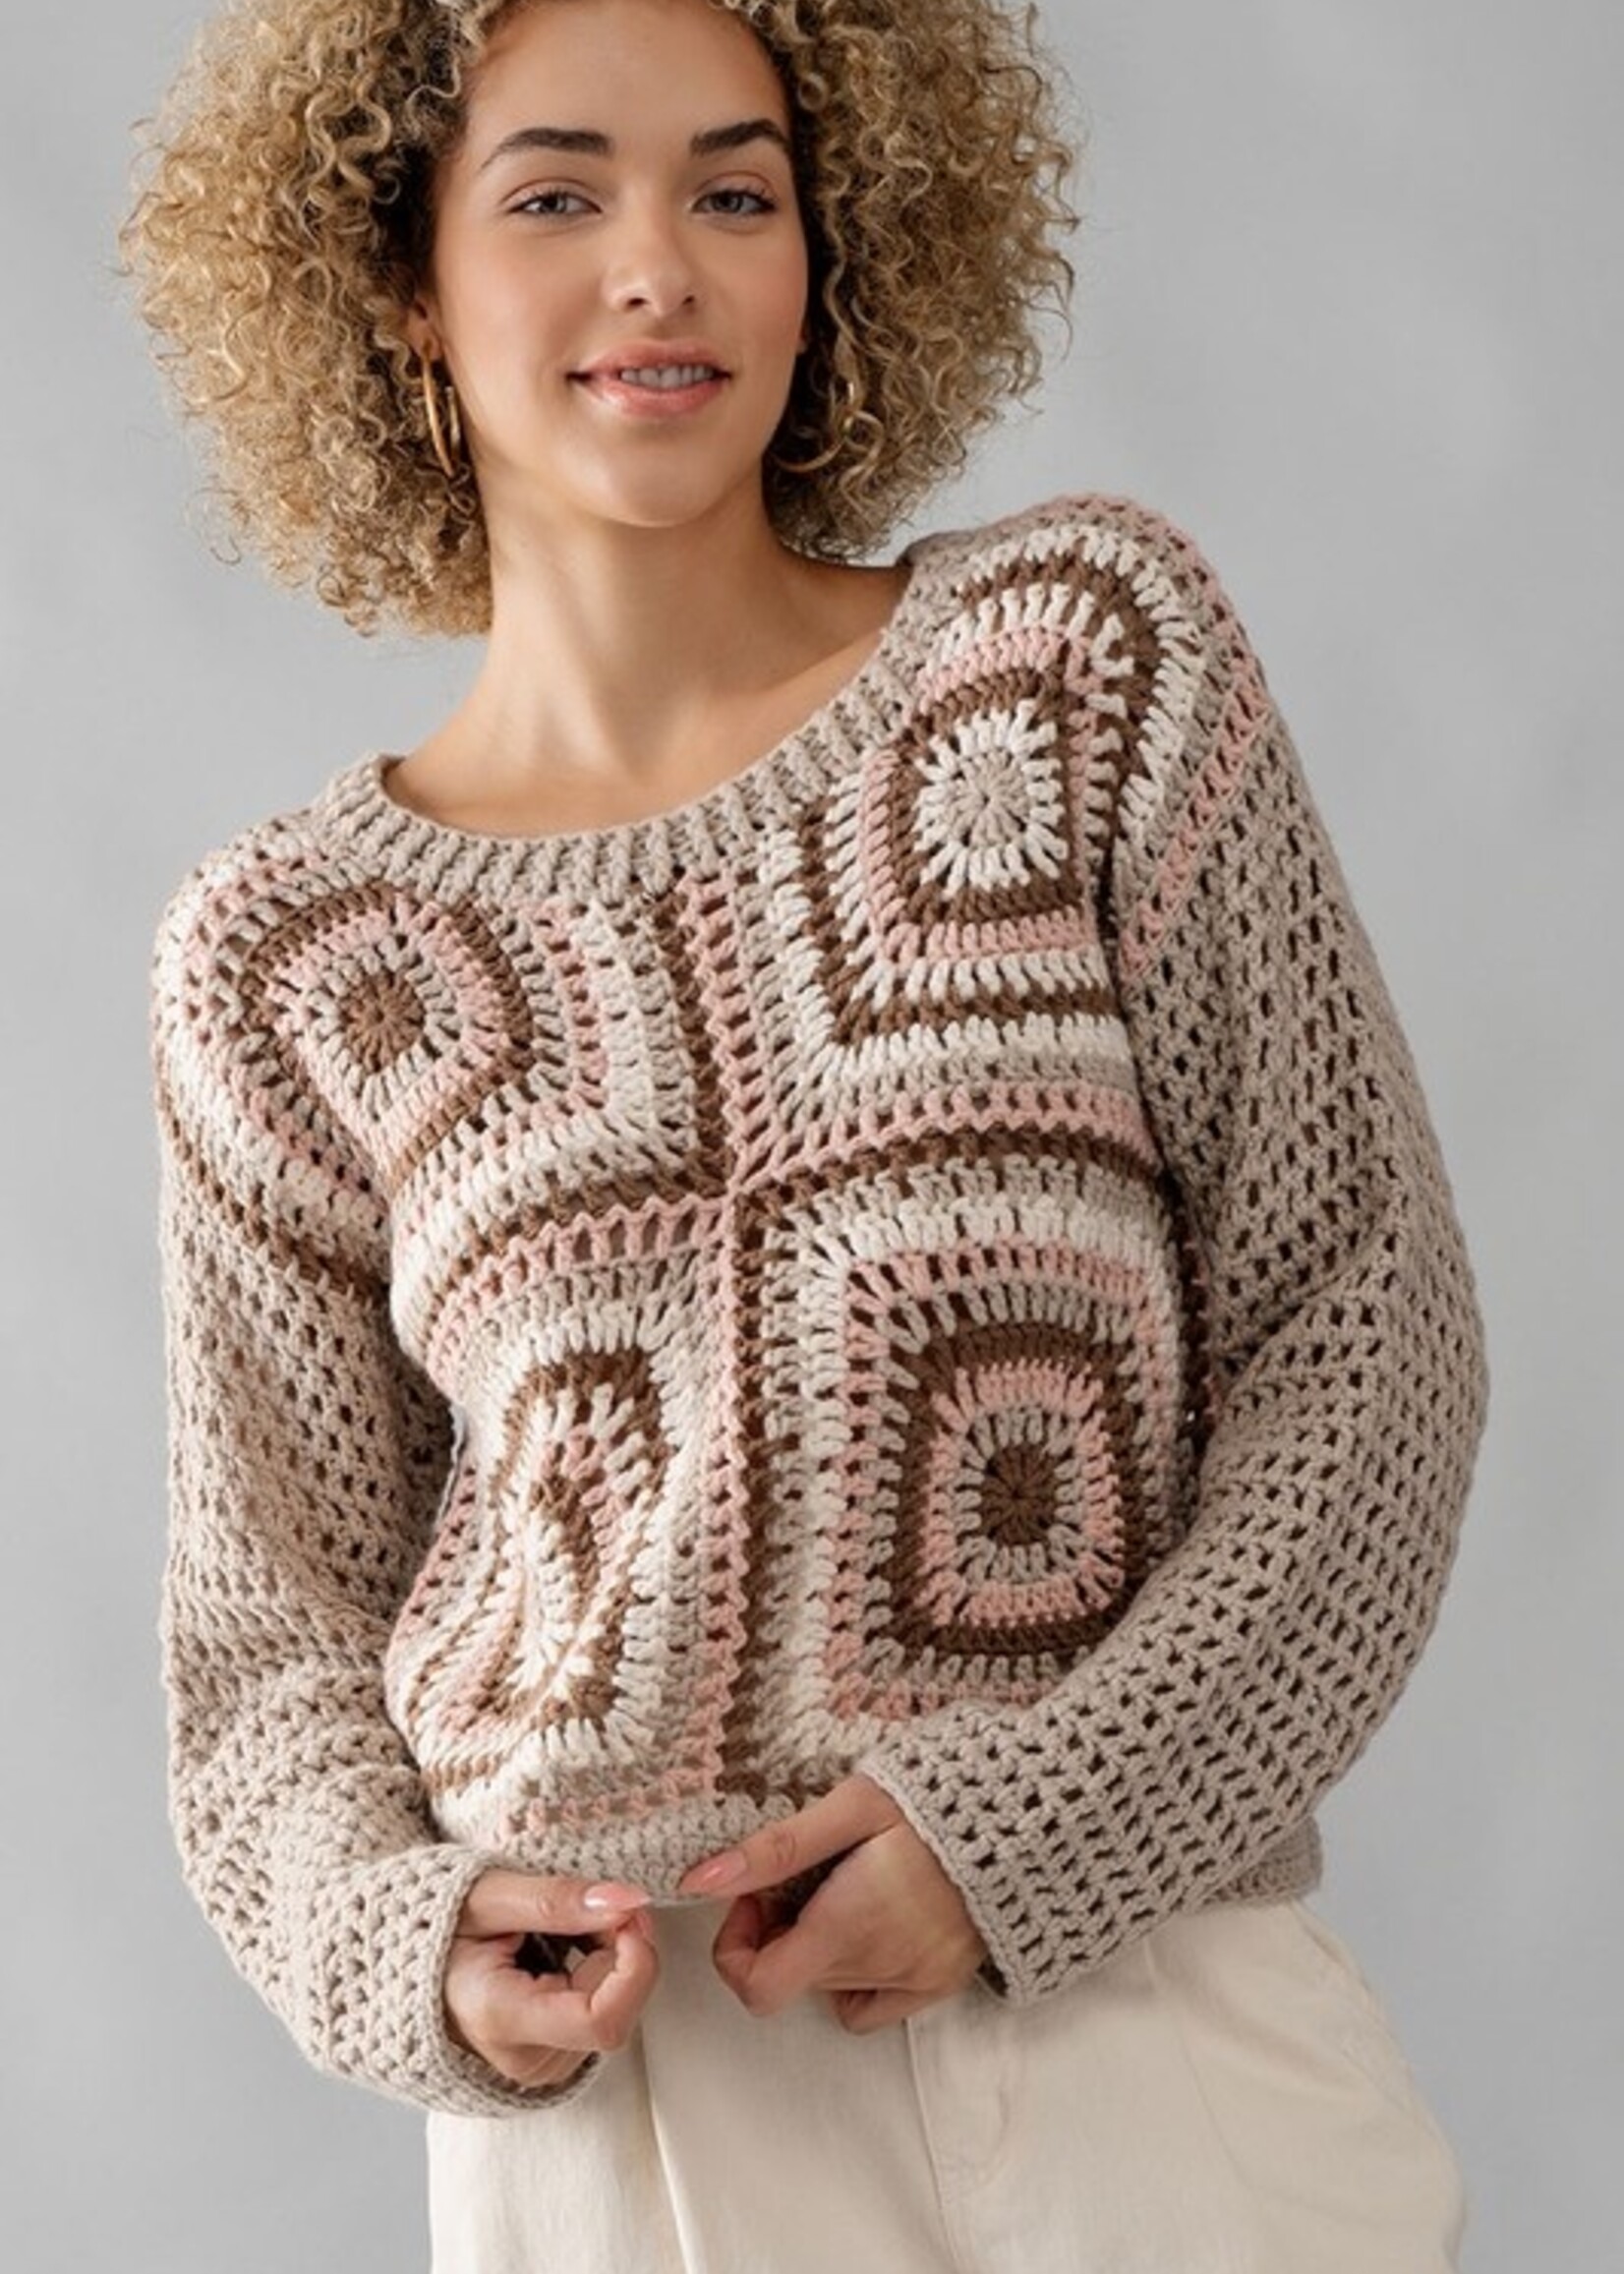 Multi crochet sweater